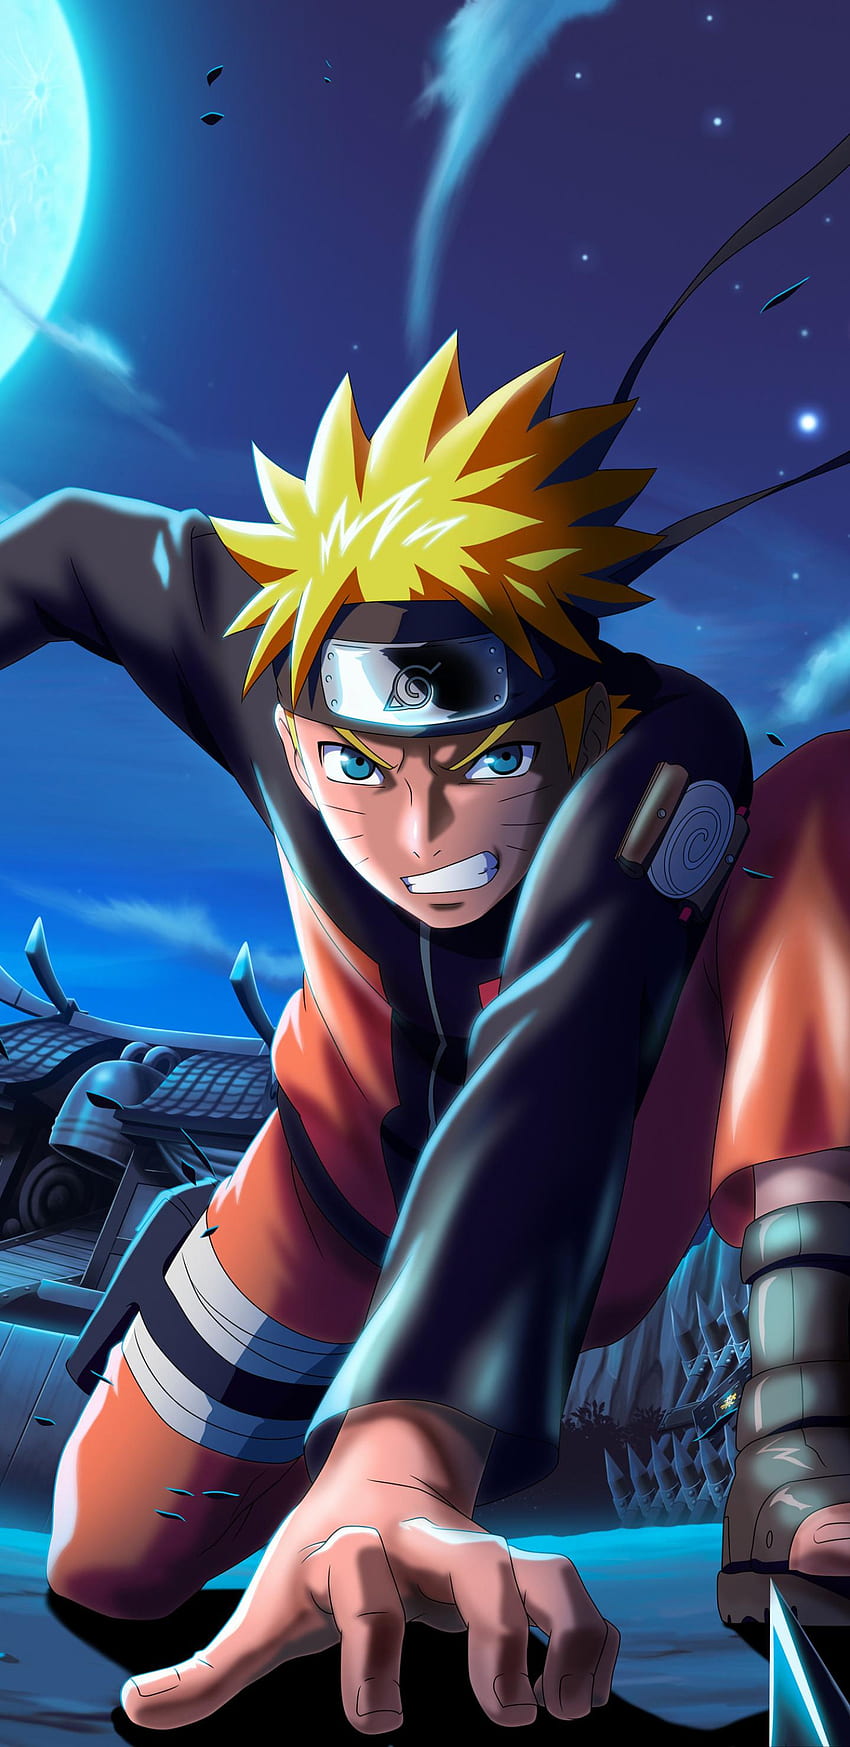 Naruto X Boruto là sự kết hợp hấp dẫn giữa nhân vật Naruto và con trai Boruto của ông. Xem hình và khám phá những trận đấu hấp dẫn và những tình tiết đầy kịch tính trong bộ anime này.